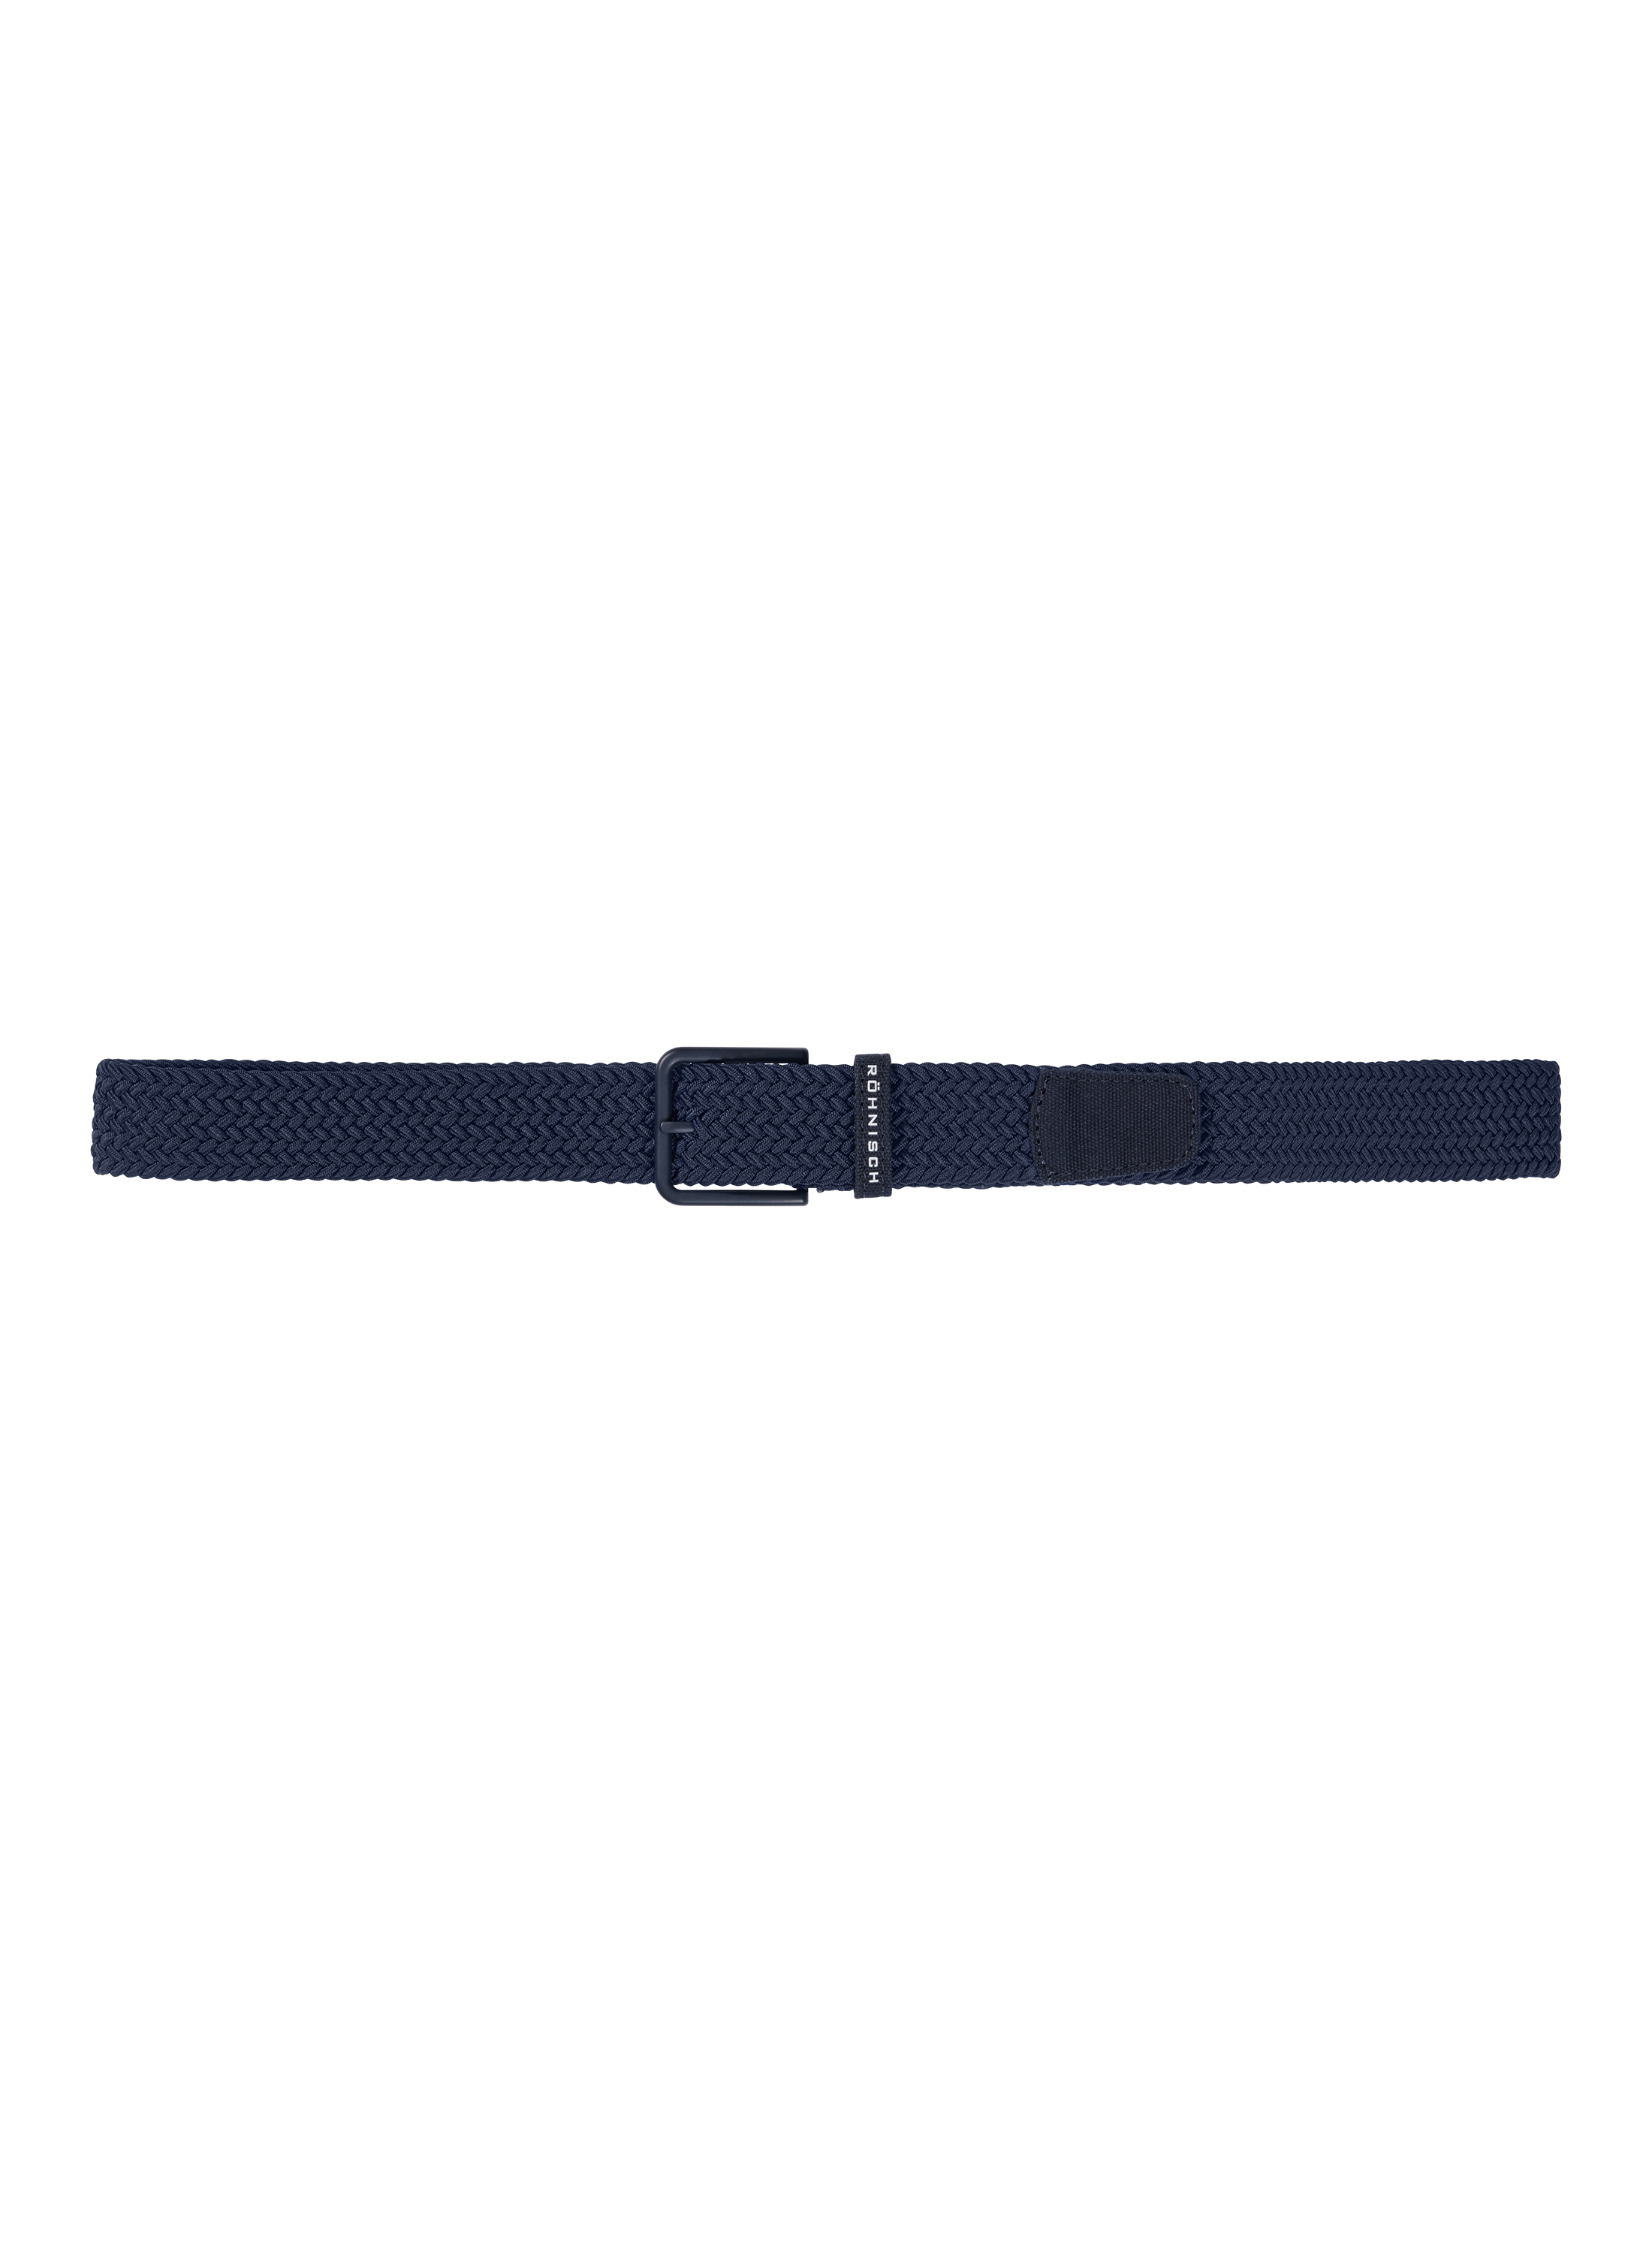 Rohnisch | 111747 | Braided Stretch Belt | Navy